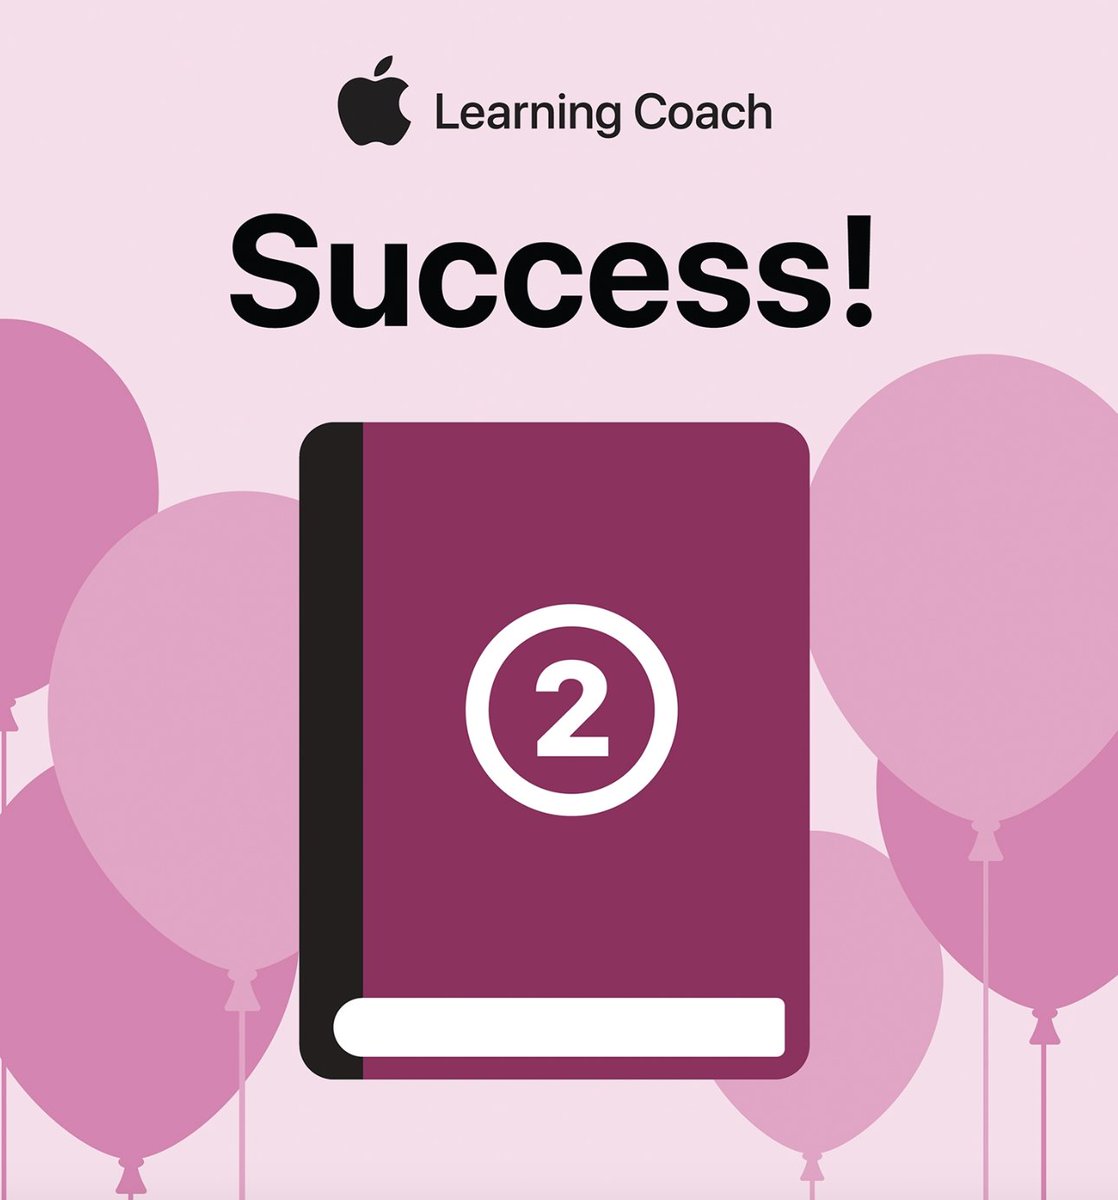 Apple Learning Coach Unit 2 is done! @TechtheVille @AppleEDU #AppleLearningCoach